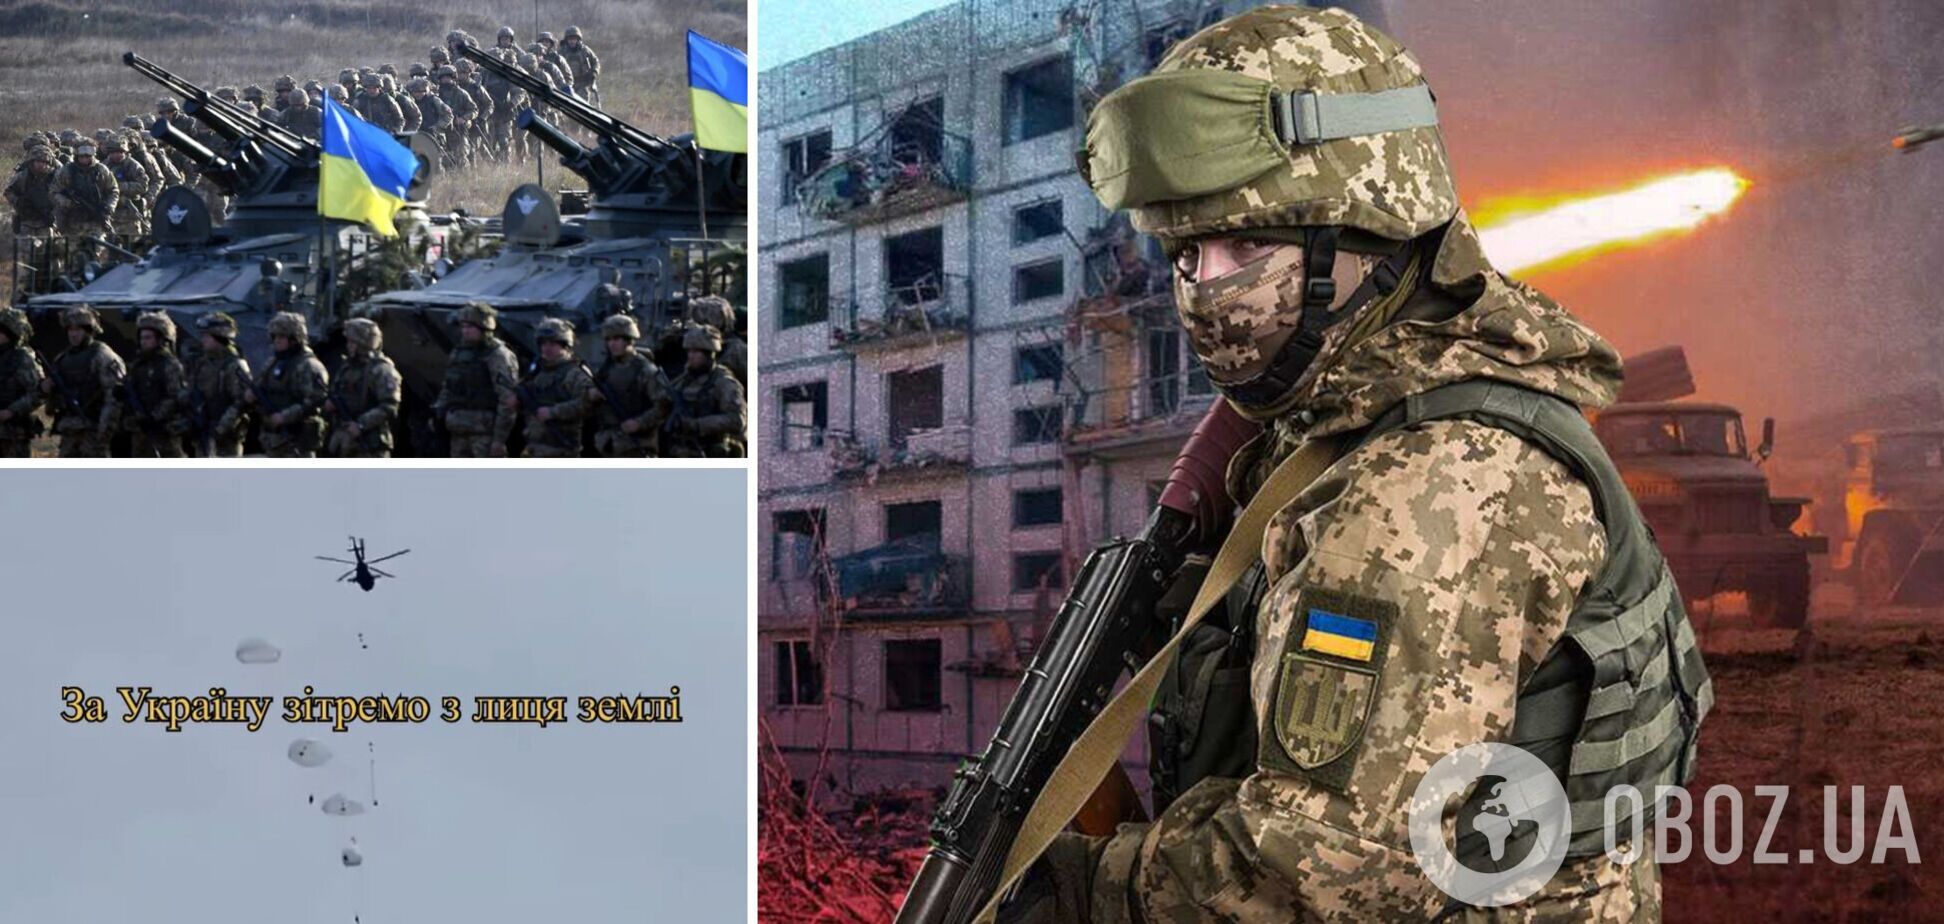 'У нас не солдати, а кіборги': з'явилося нове яскраве відео про Збройні сили України